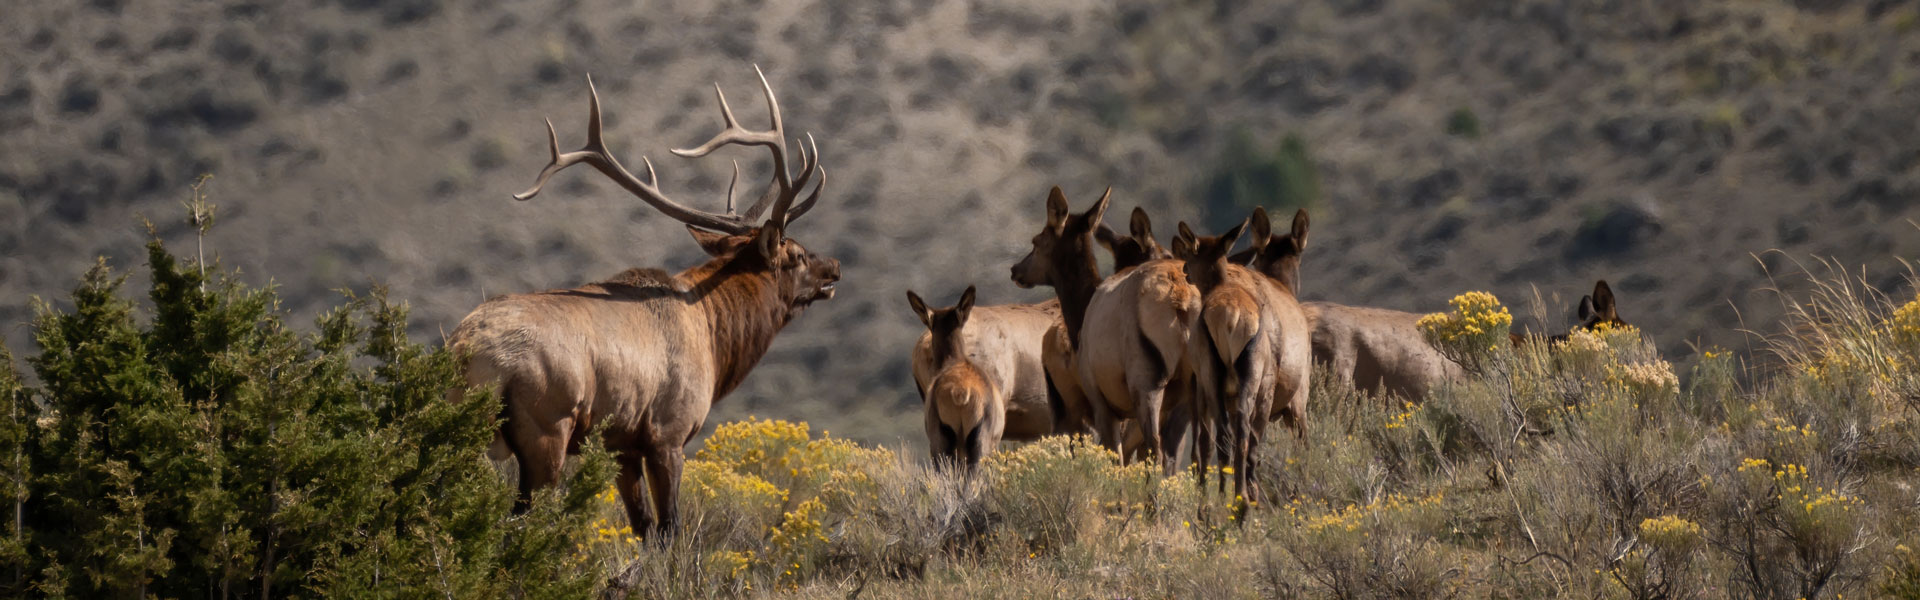 Bull elk and calves